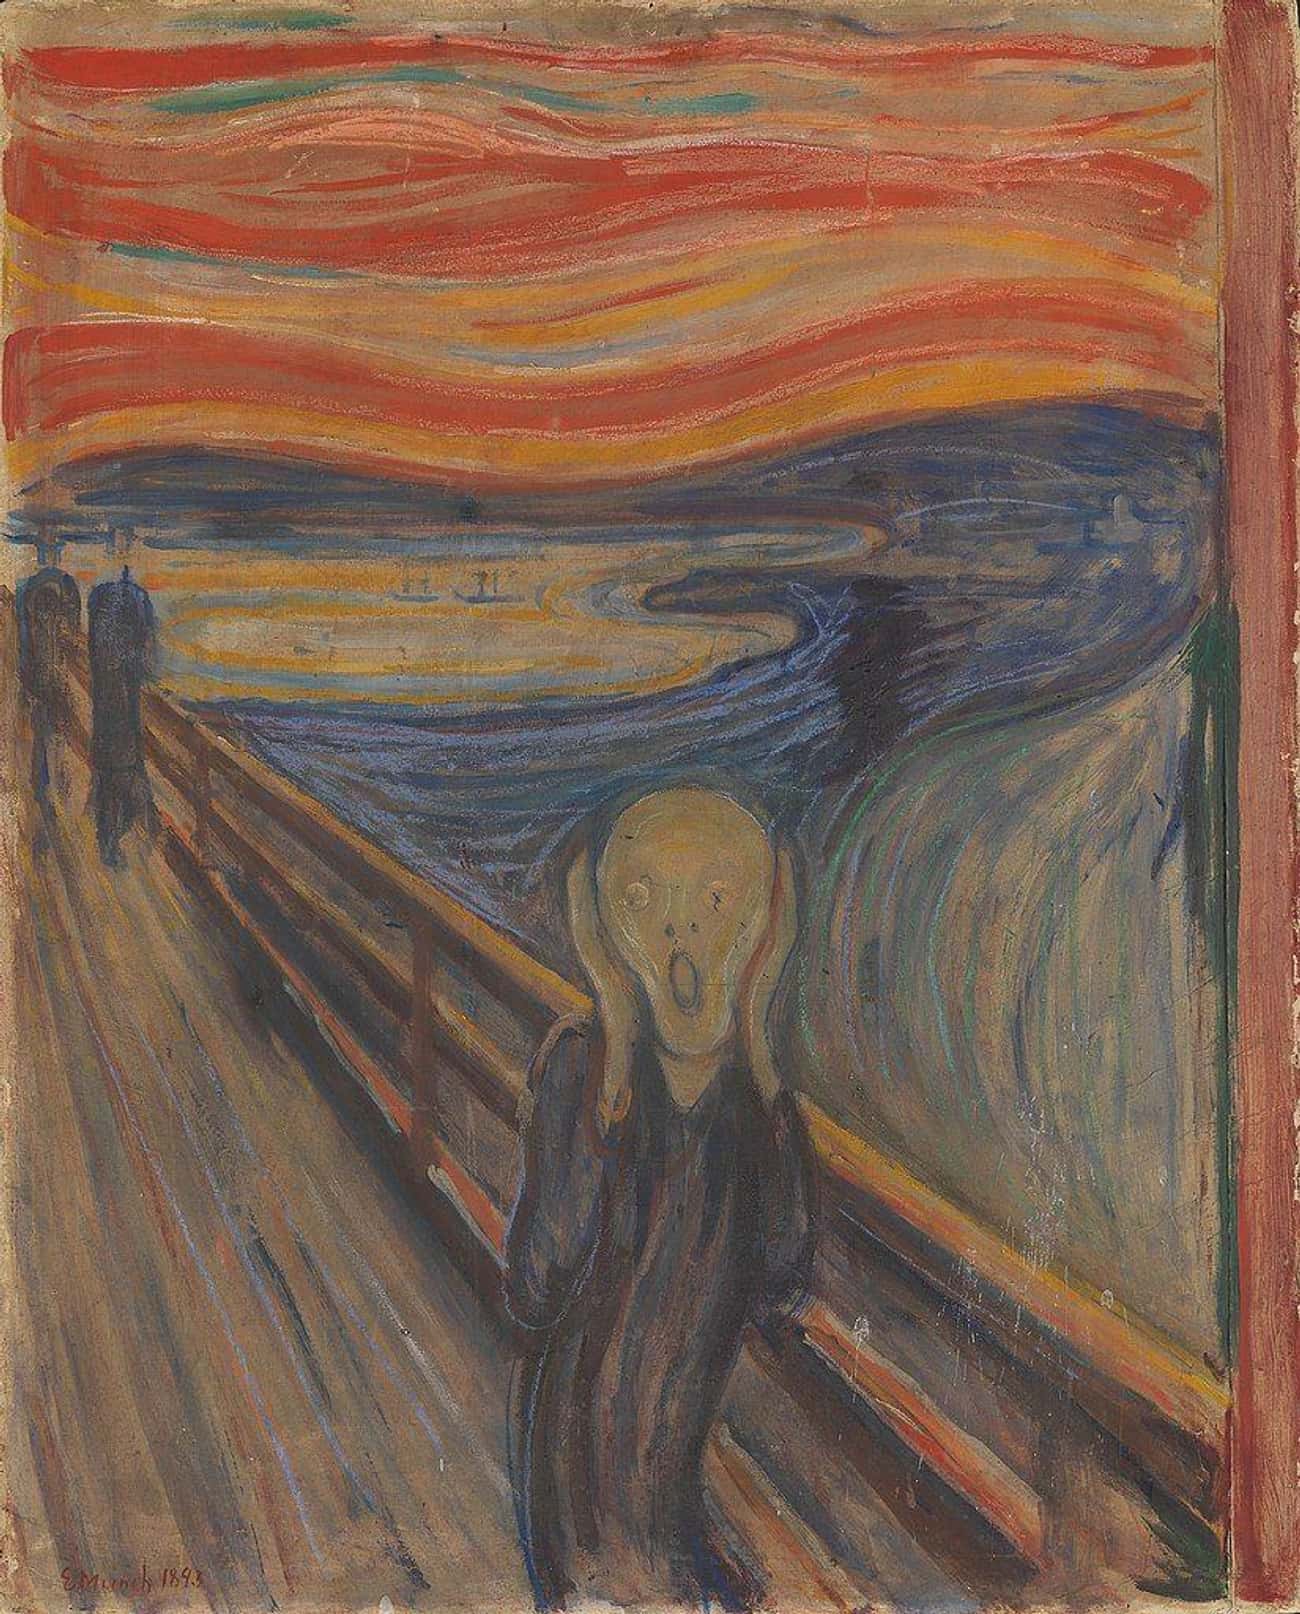 Edvard Munch's 'The Scream' Has A Hidden Message Written By The Artist